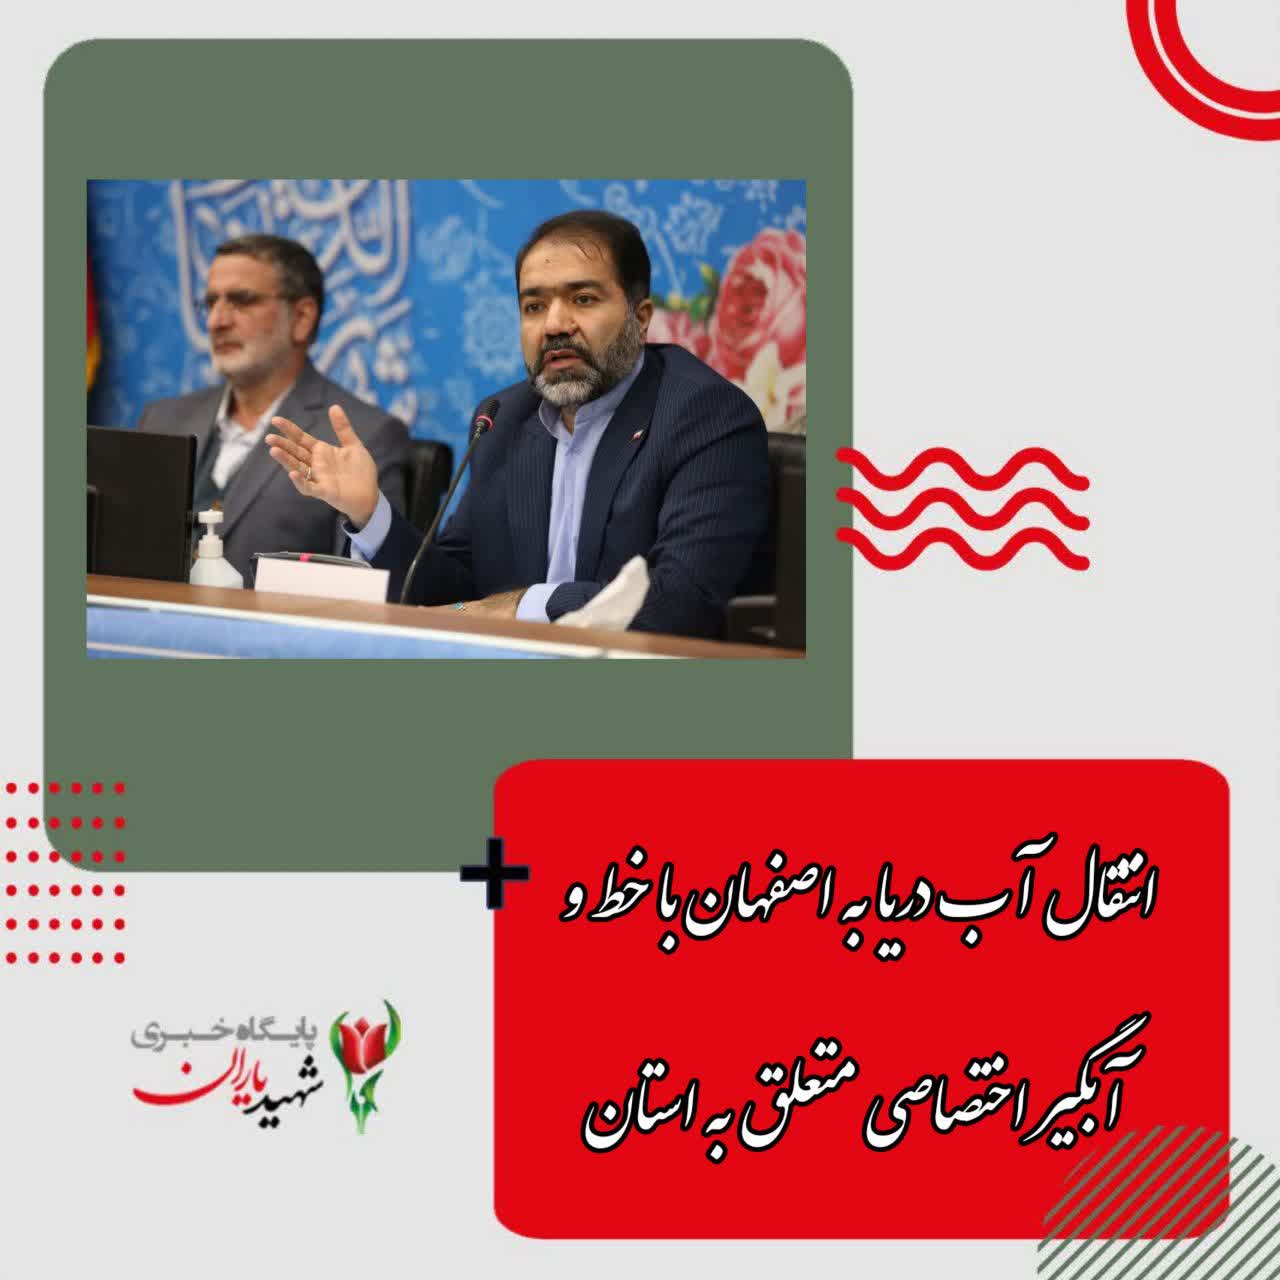 استاندار اصفهان در نشست صمیمانه با مدیران رسانه های استان خبر داد: